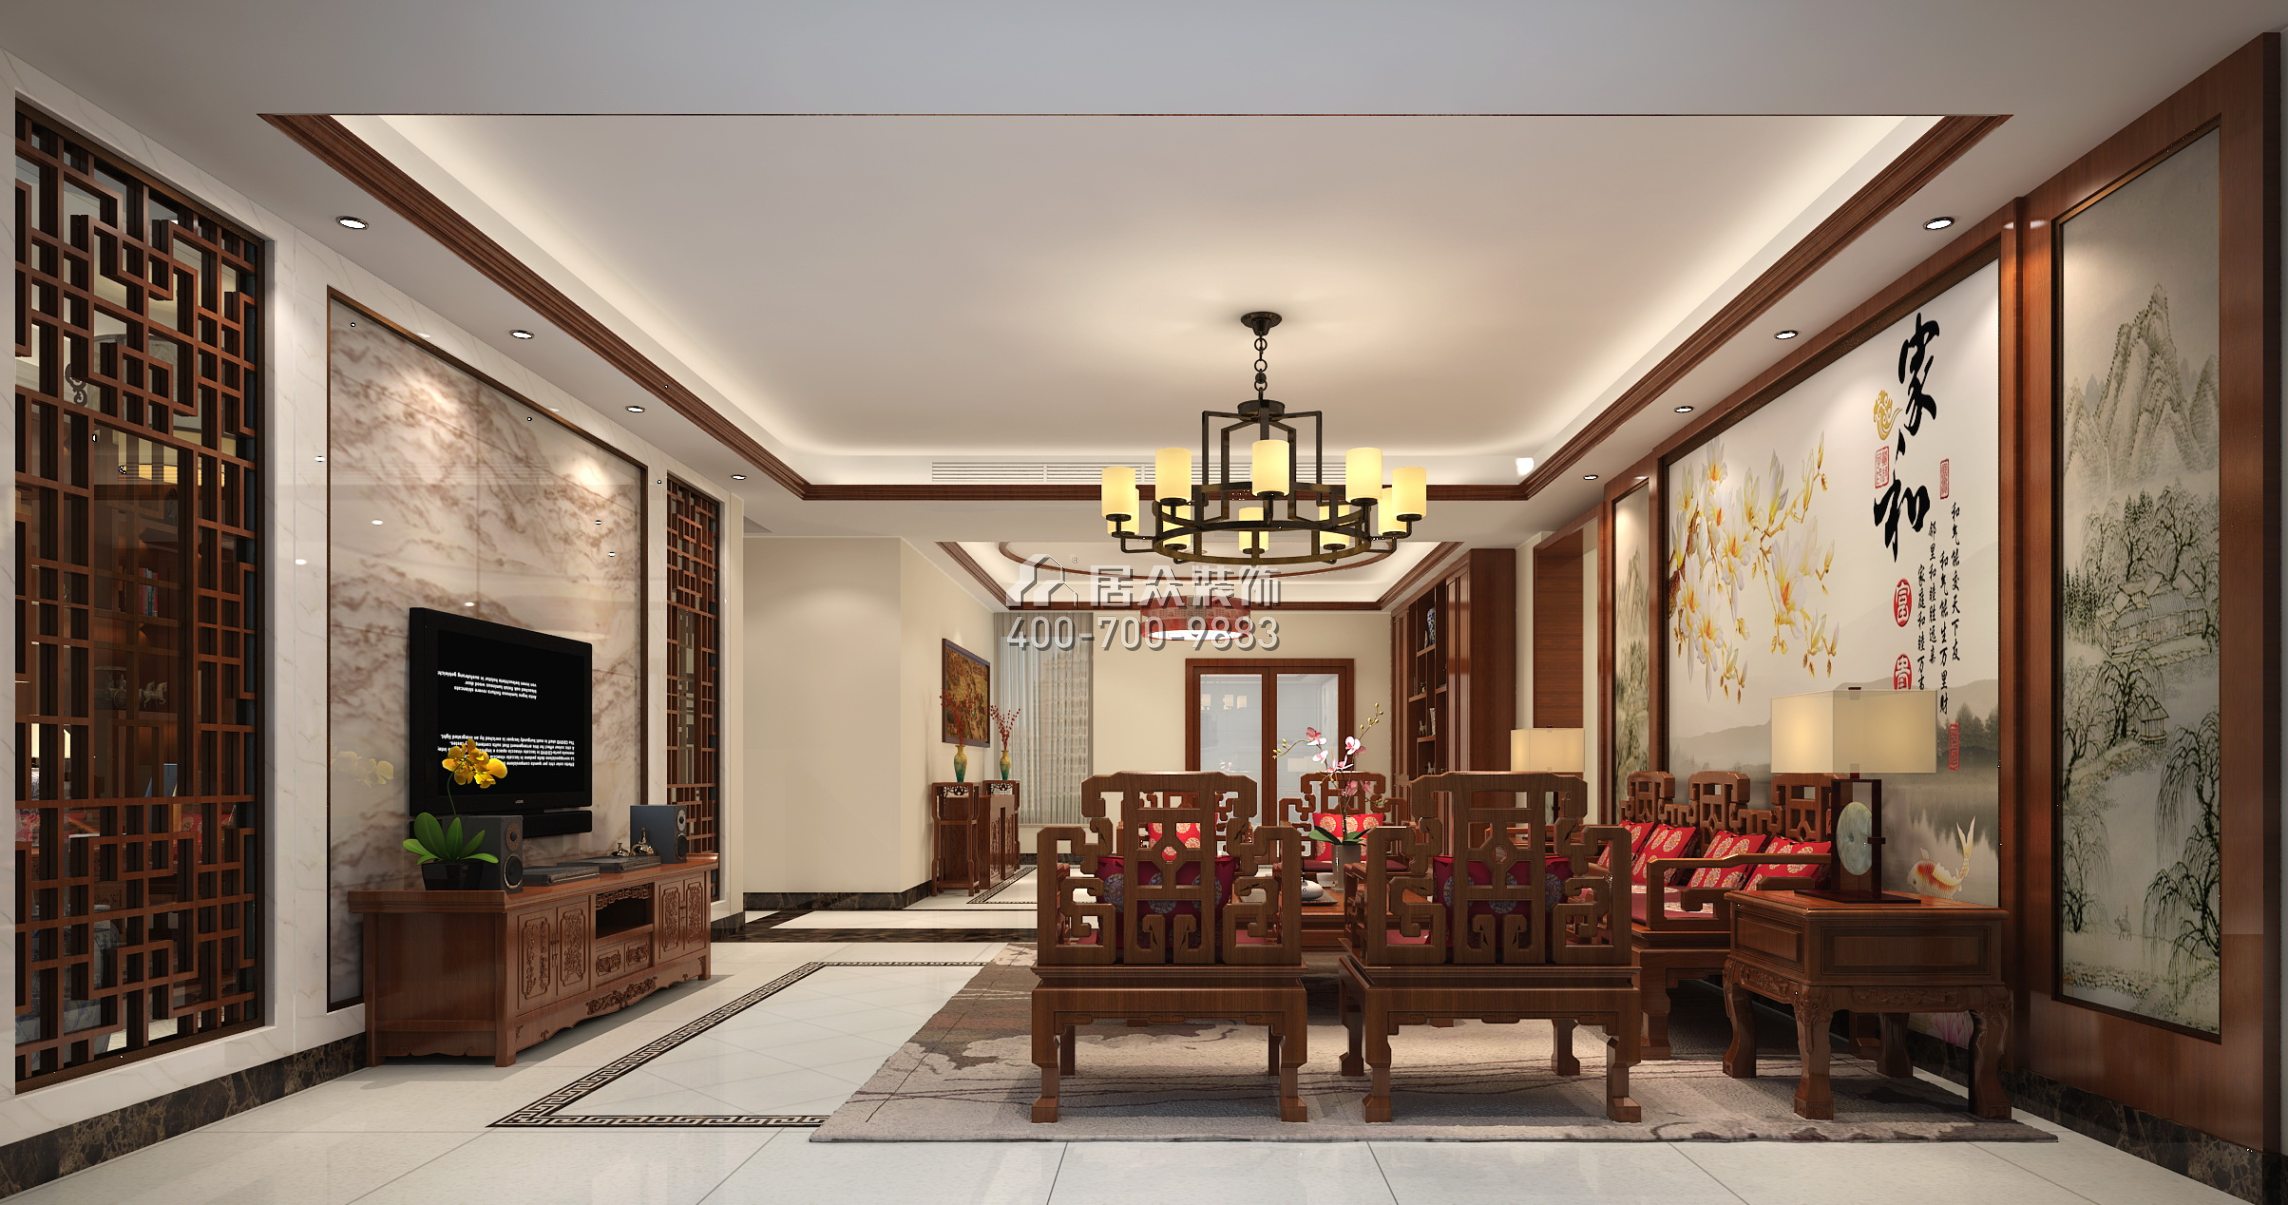 香蜜湖九号大院285平方米中式风格平层户型客厅装修效果图